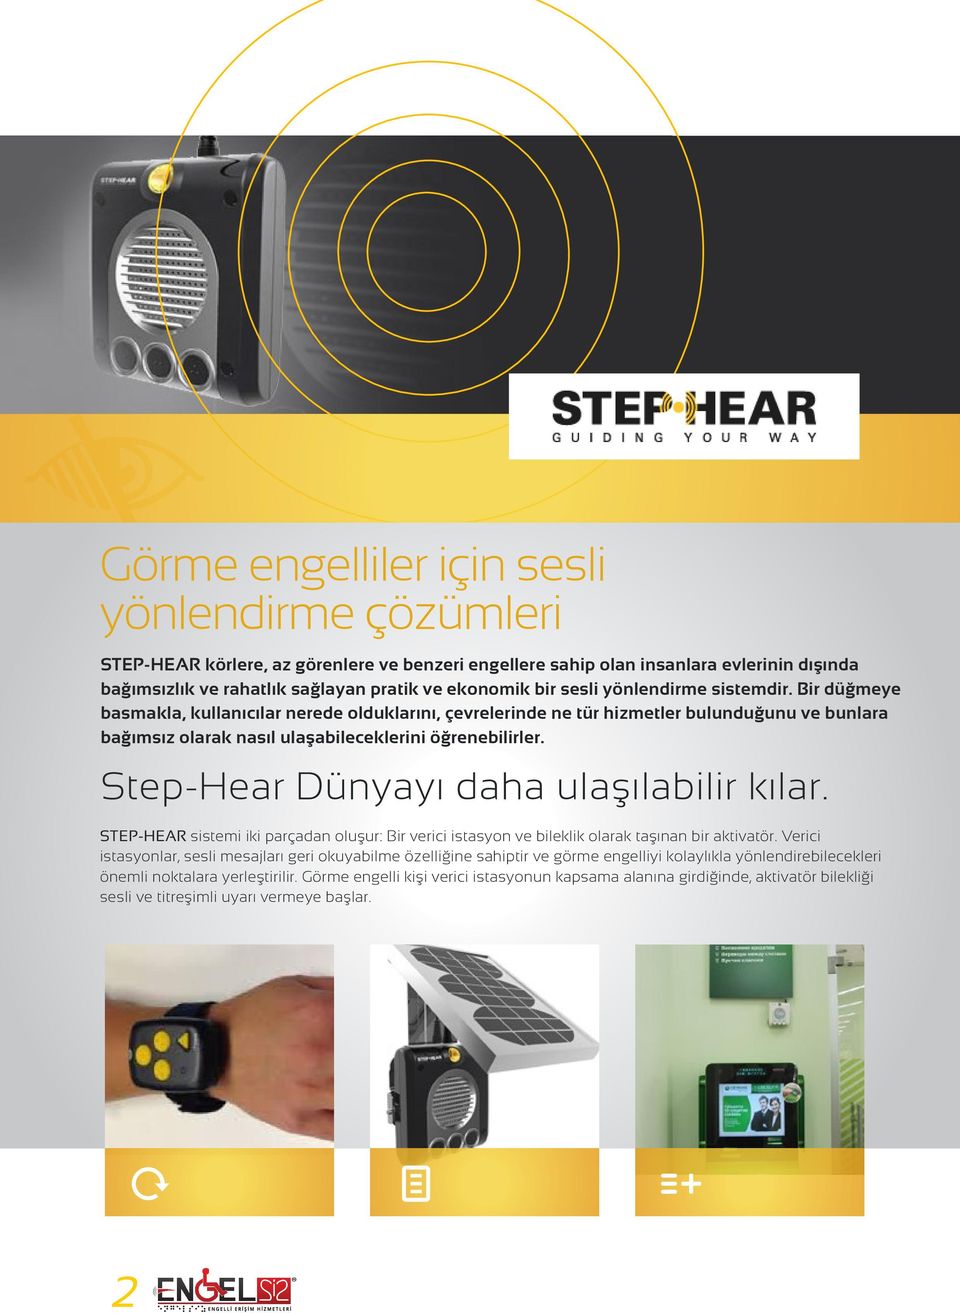 Step-Hear Dünyayı daha ulaşılabilir kılar. STEP-HEAR sistemi iki parçadan oluşur: Bir verici istasyon ve bileklik olarak taşınan bir aktivatör.